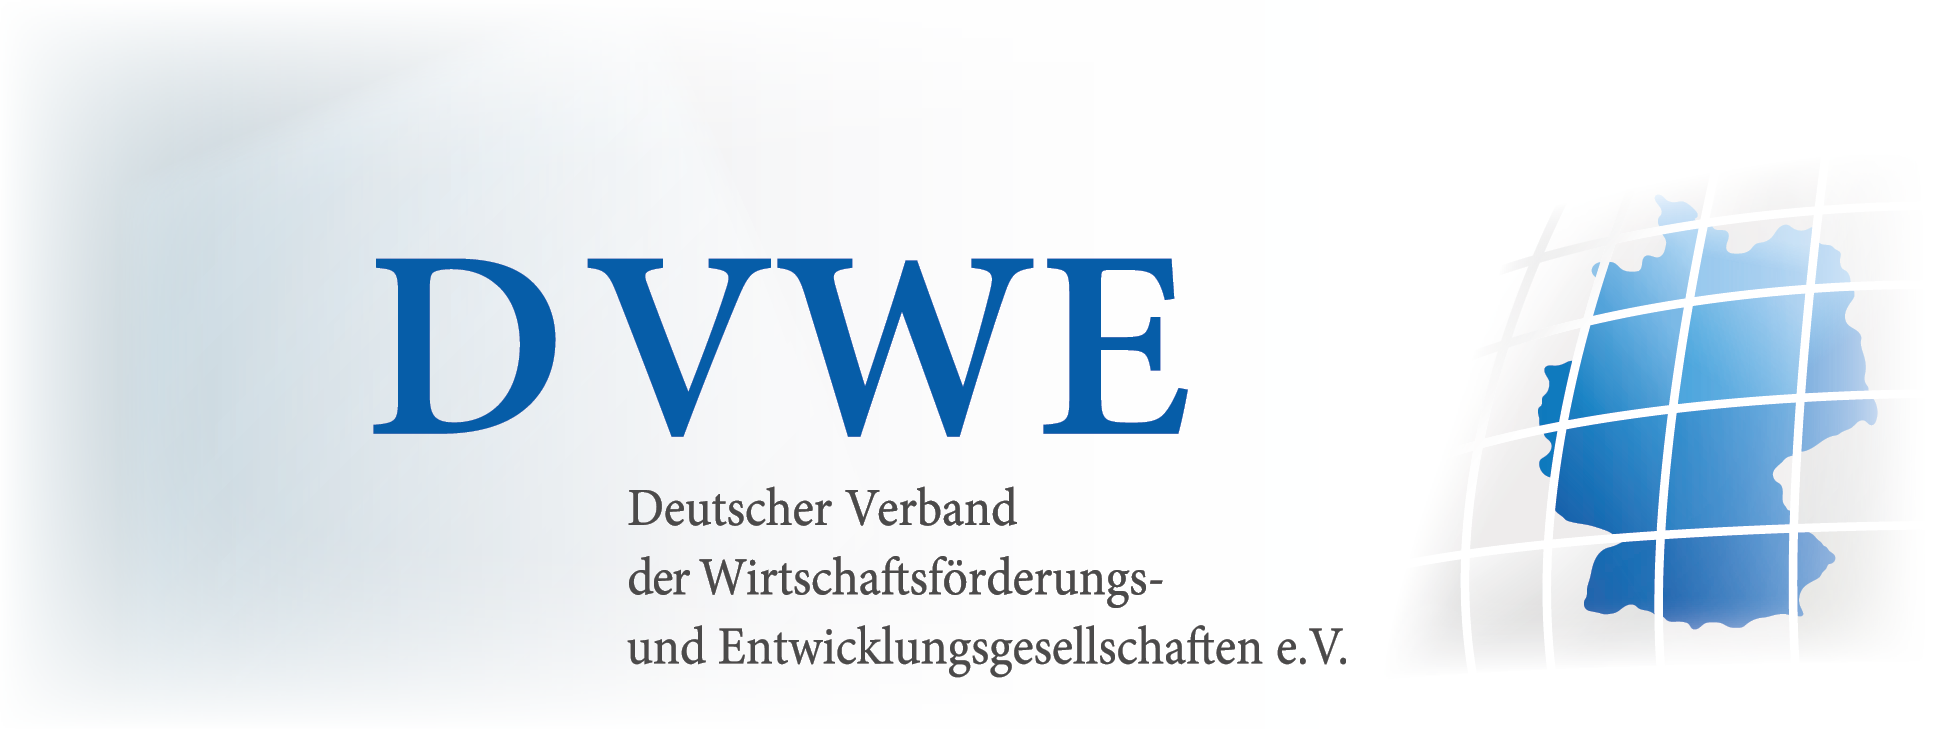 Fach-Arbeitsgruppen des DVWE treffen sich zum weiteren Austausch